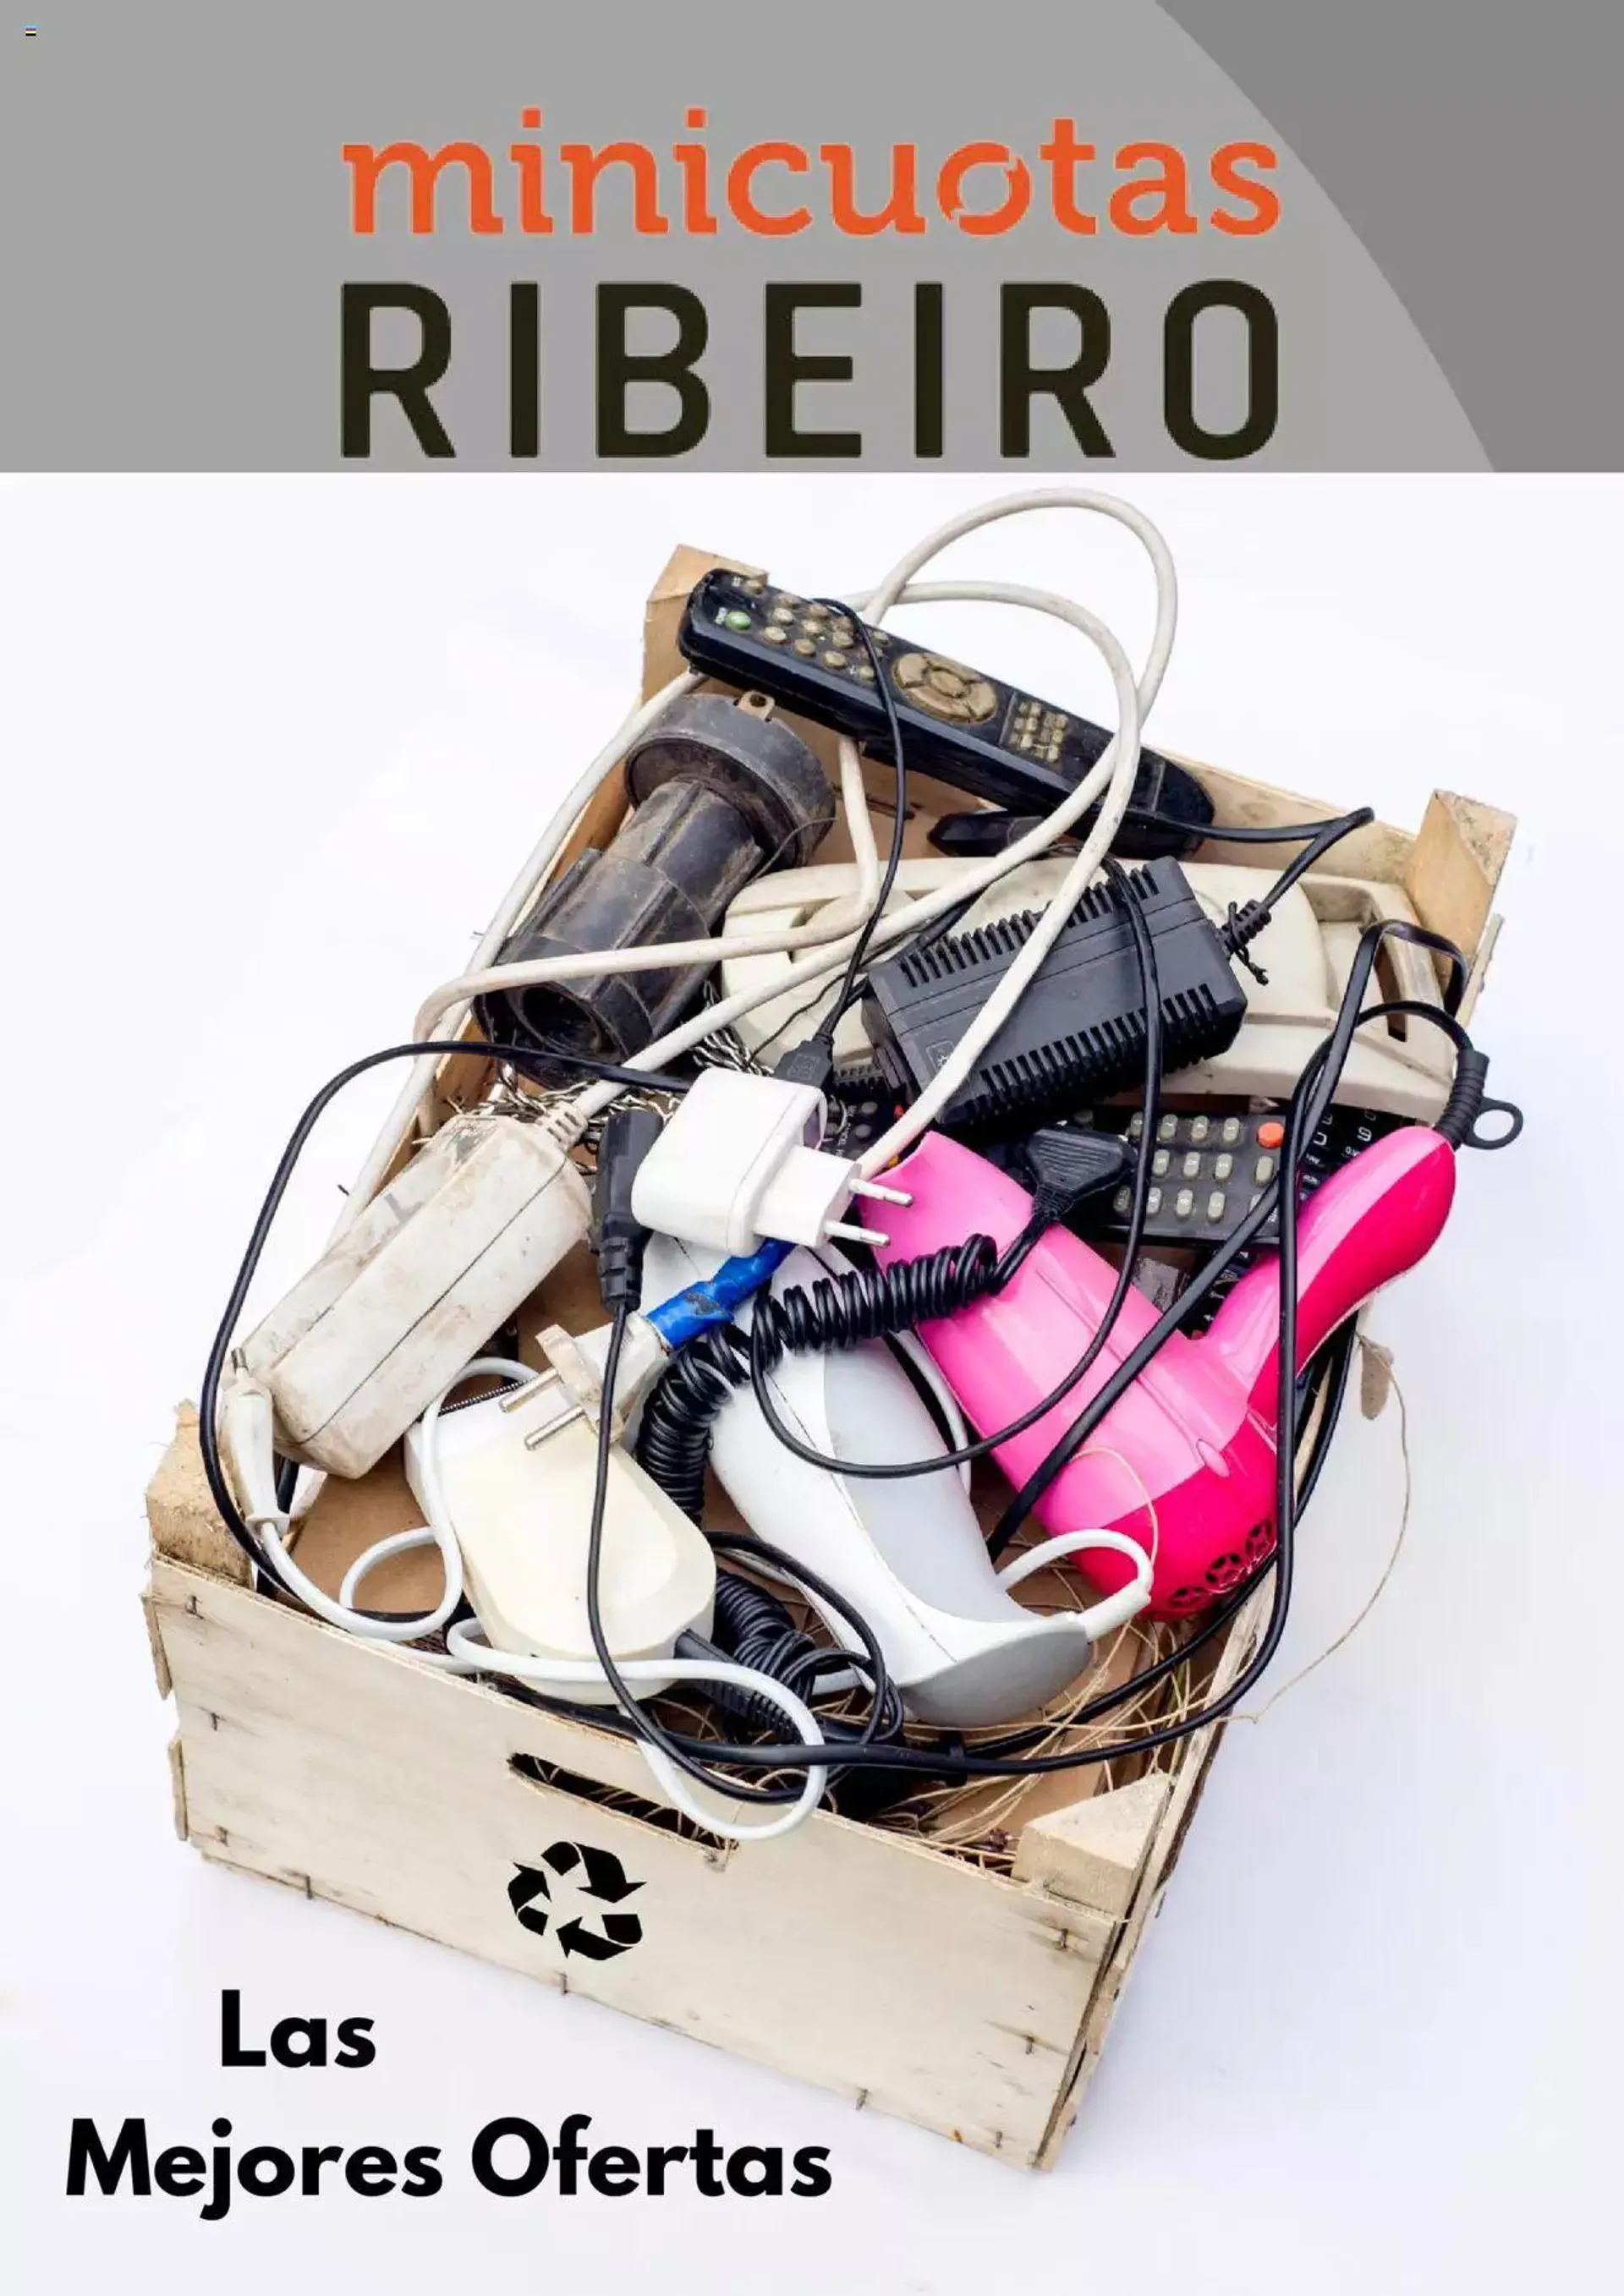 Ribeiro catálogo - 0